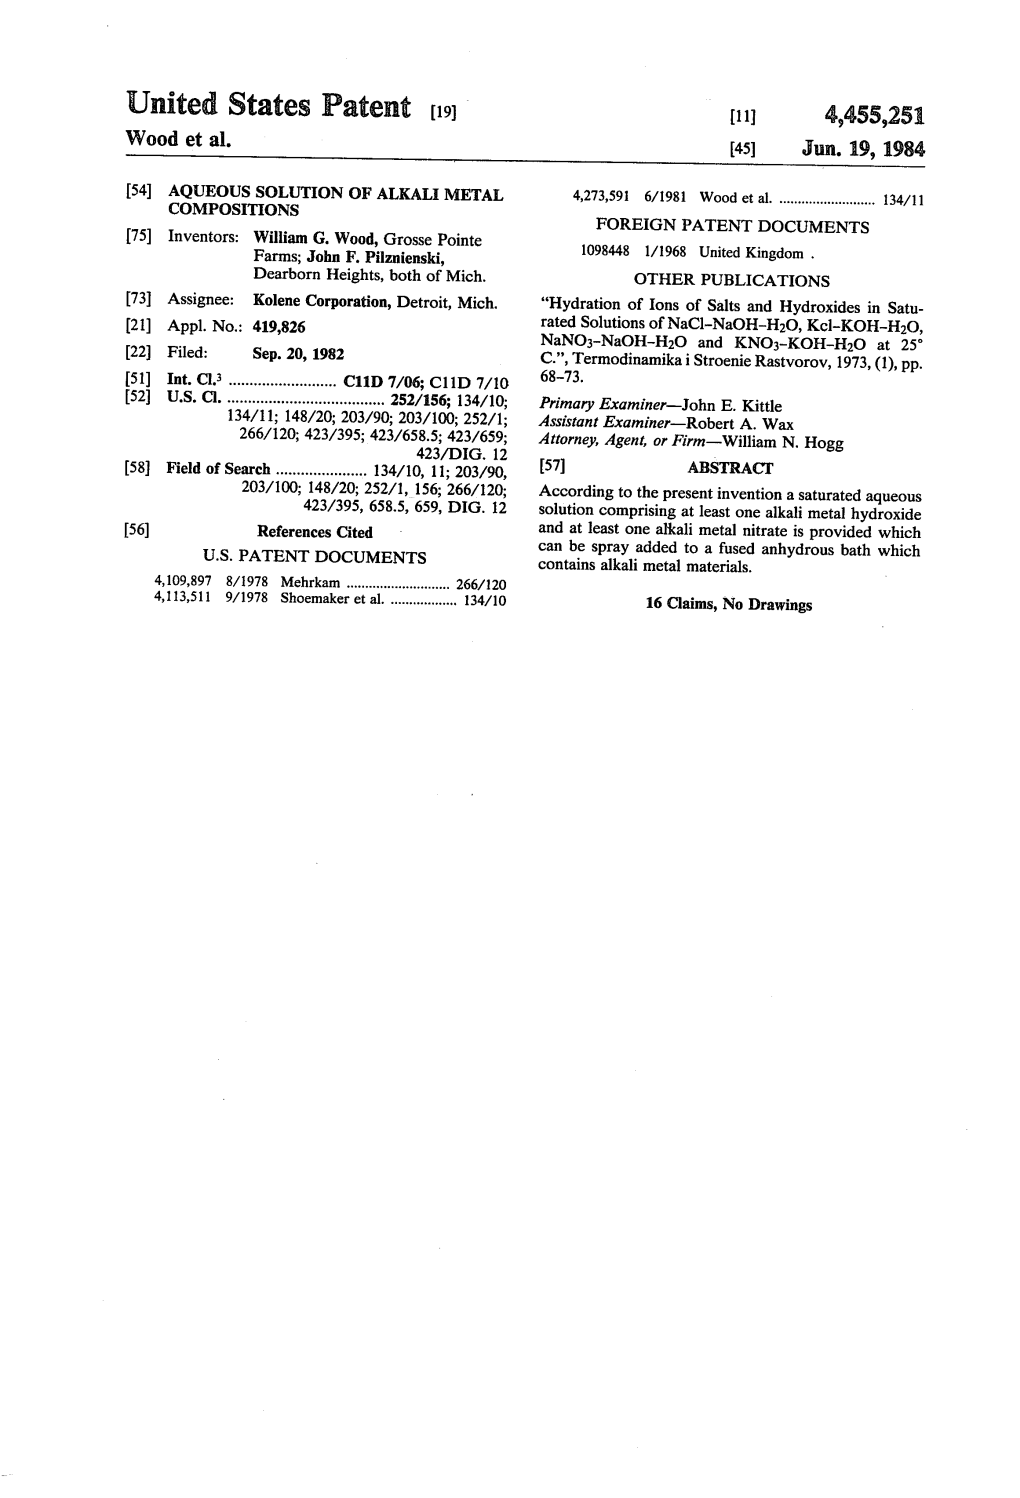 United States Patent (19) (11) 4,455,251 Wood Et Al